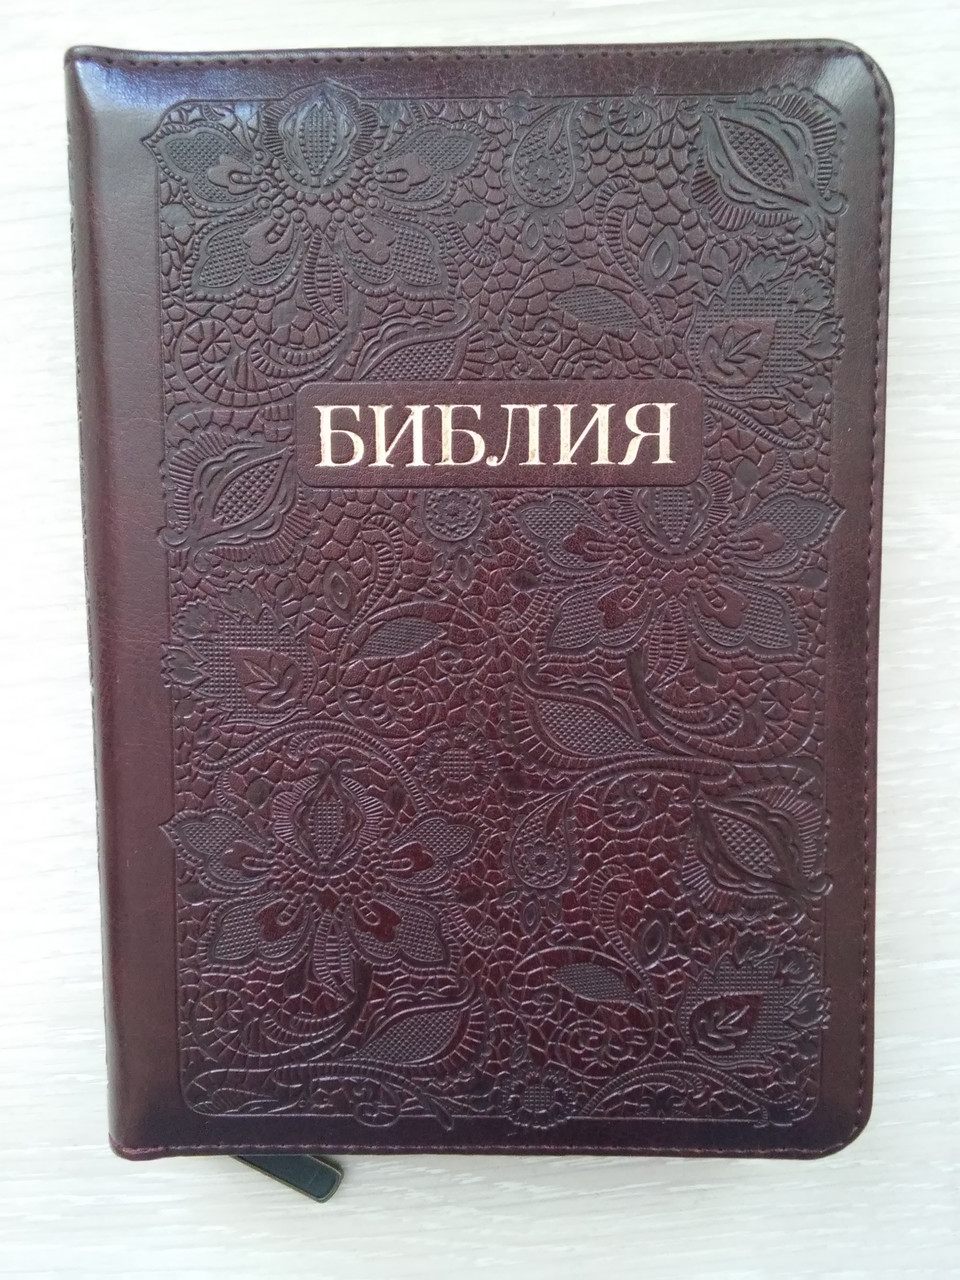 Біблія, розмір 13,5х18,5, вишнева з візерунком